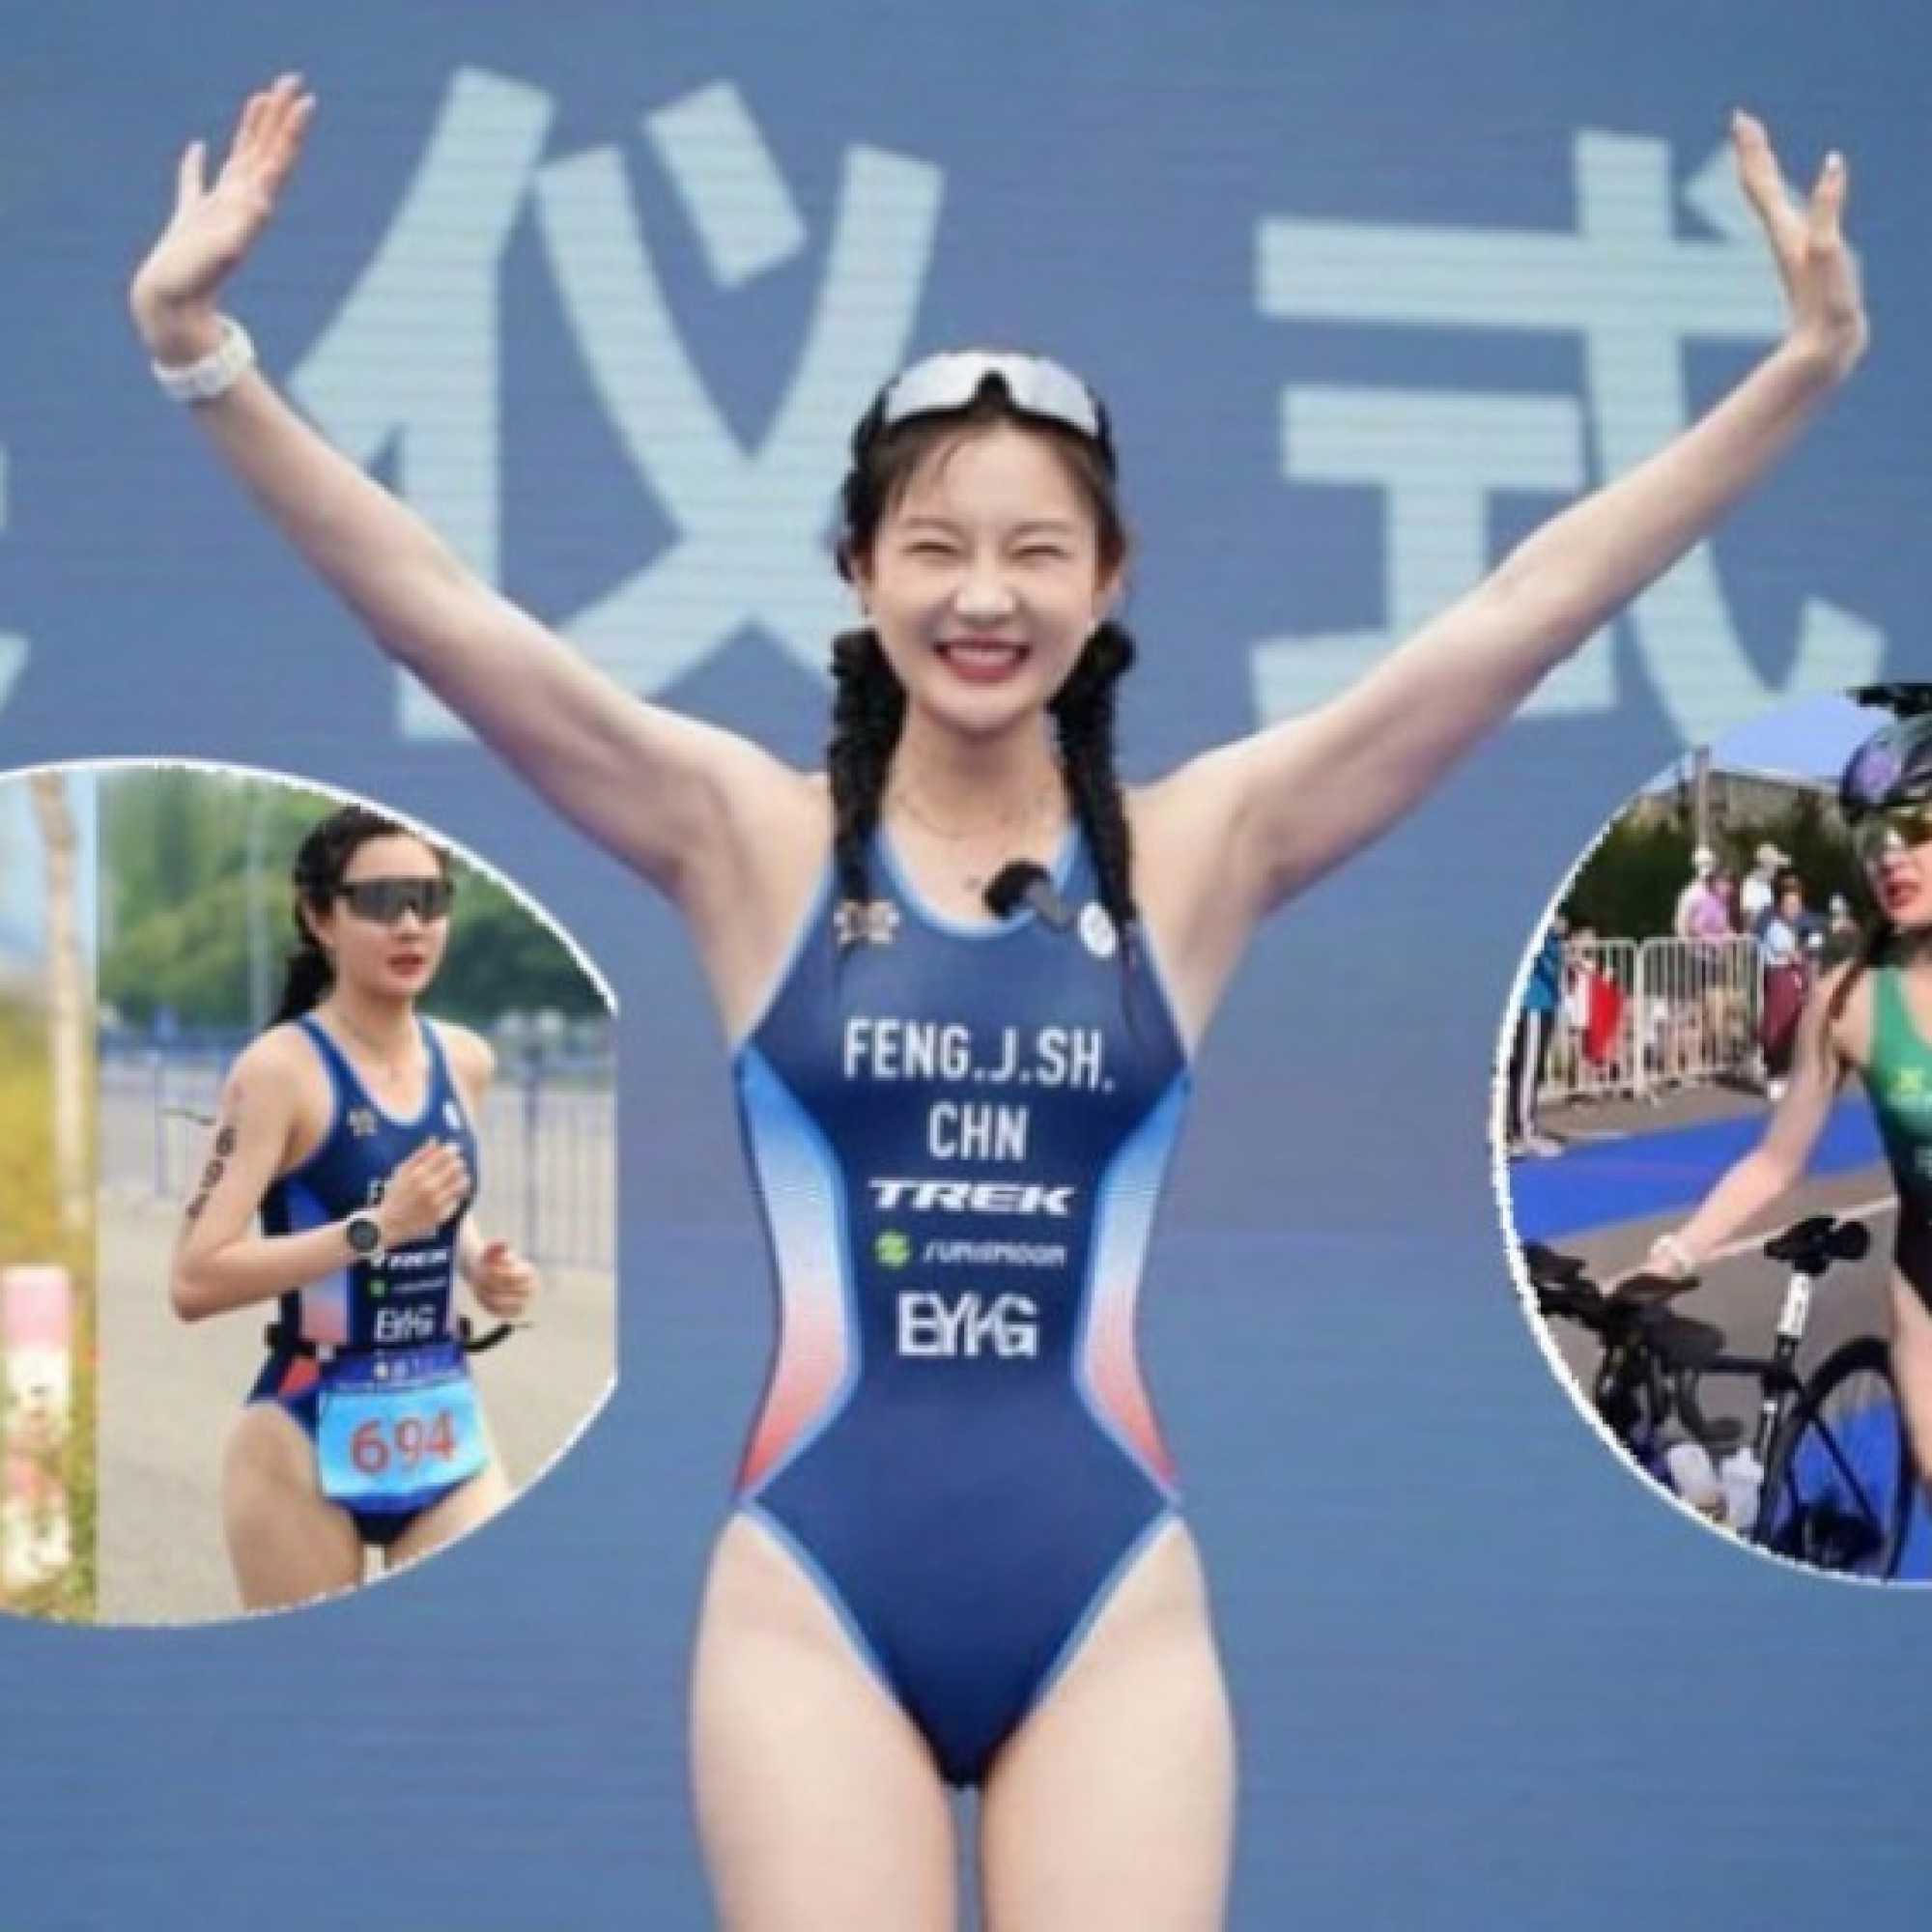  - Người đẹp Trung Quốc bị chỉ trích vì mặc bikini đua xe, lên nhận chức vô địch